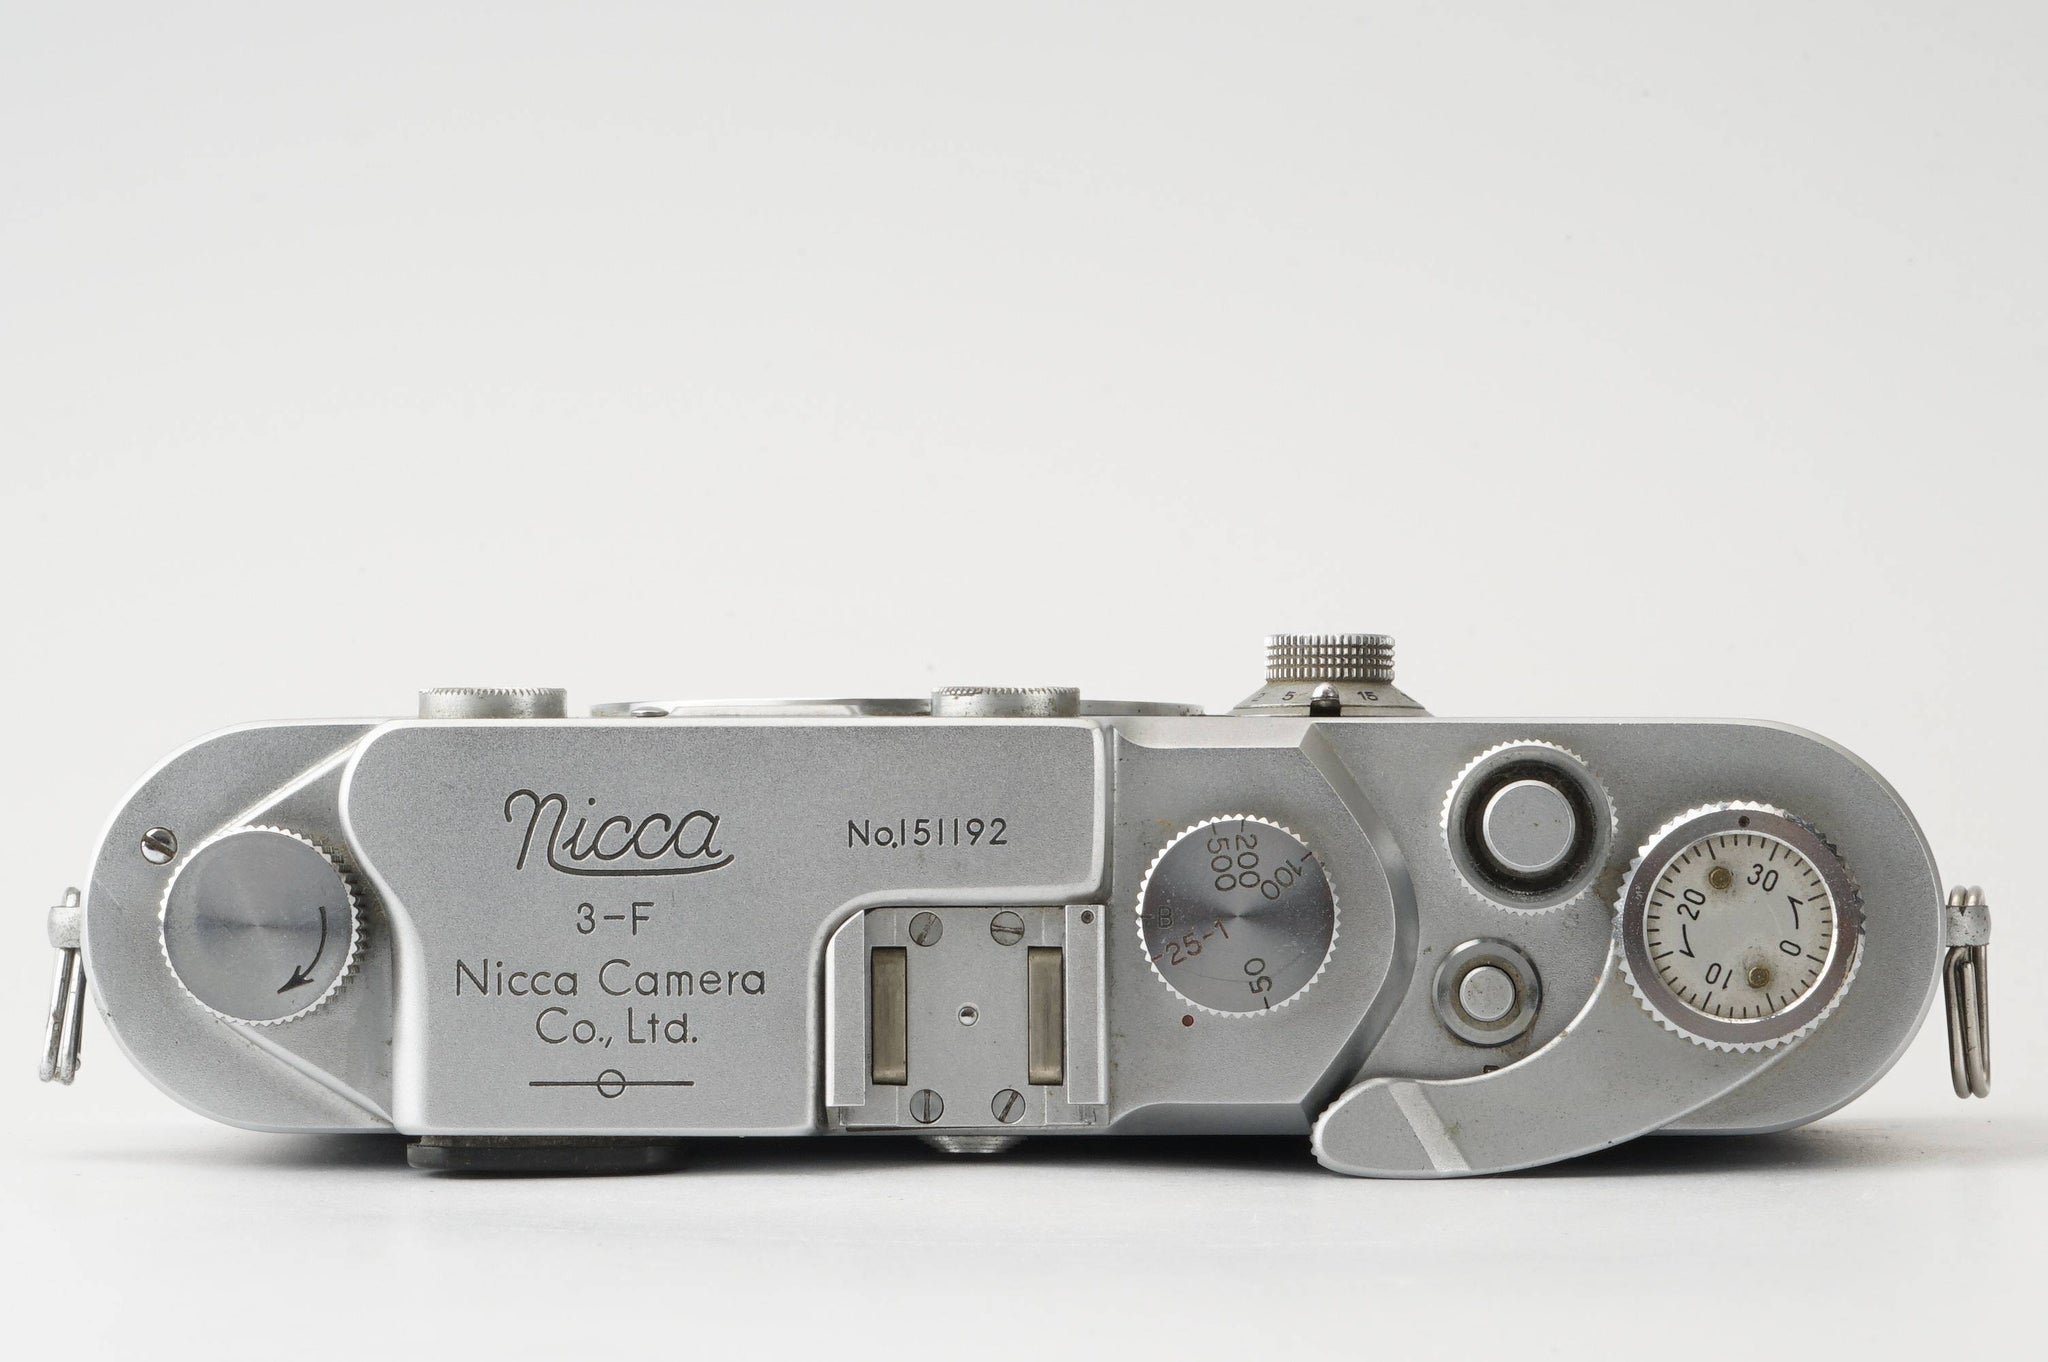 ケースはイタミがあります美品Nicca 3-F ニッカ 3-F 前期 レンジファインダーカメラ、ケース付